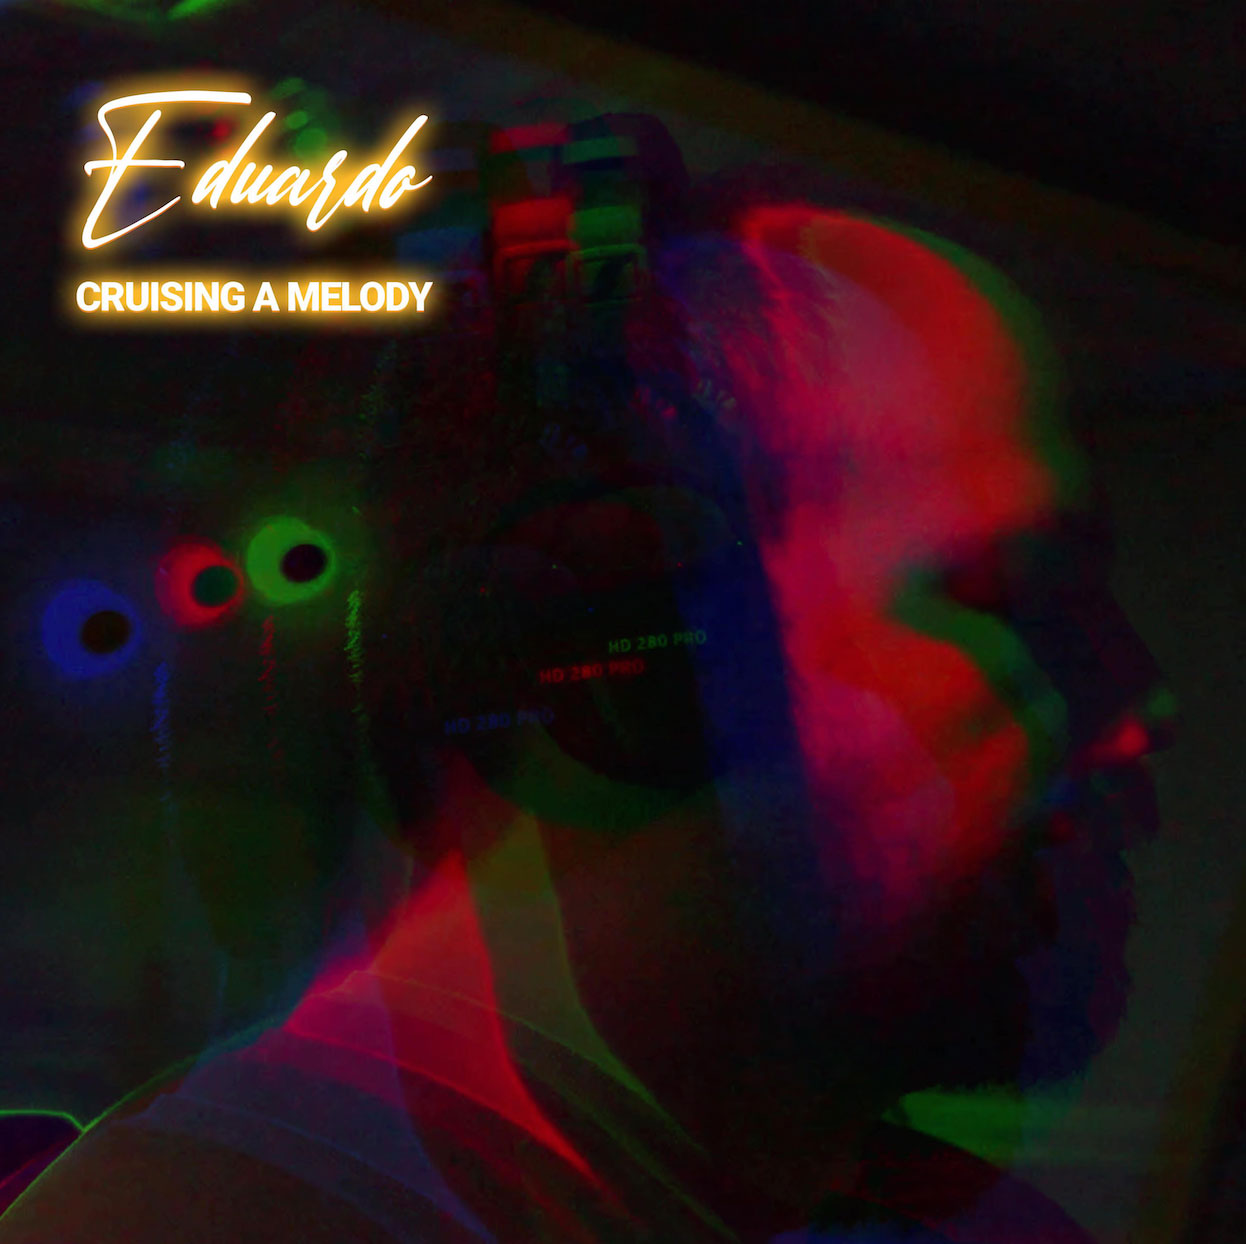  Escucha “Cruising A Melody”, el nuevo álbum de Eduardo